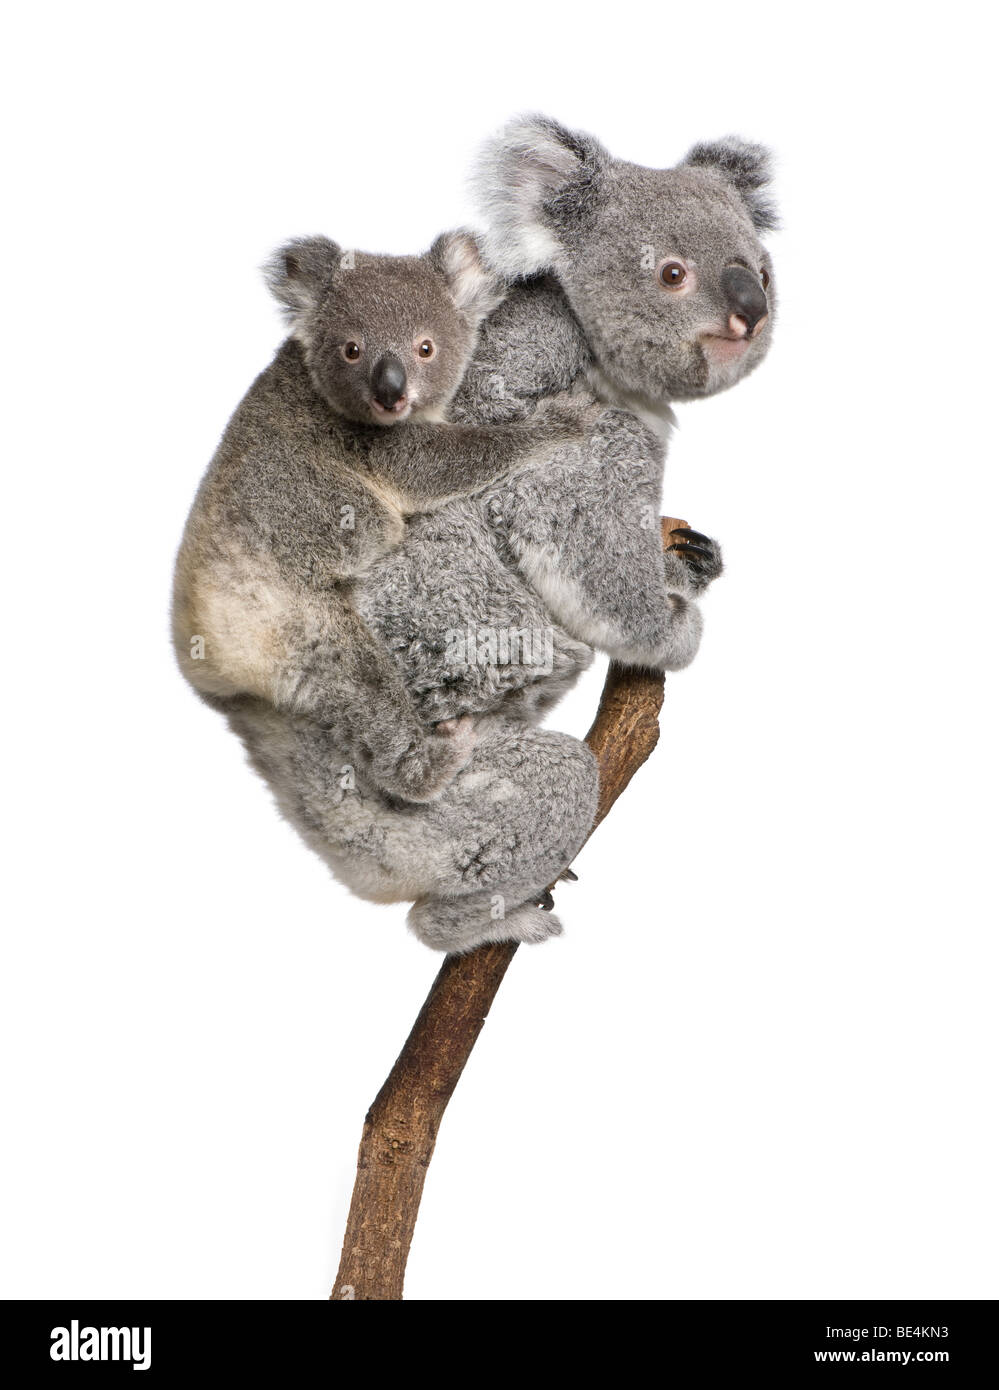 Los osos Koala trepar árboles, 4 años y 9 meses de edad, Phascolarctos cinereus, delante de un fondo blanco Foto de stock